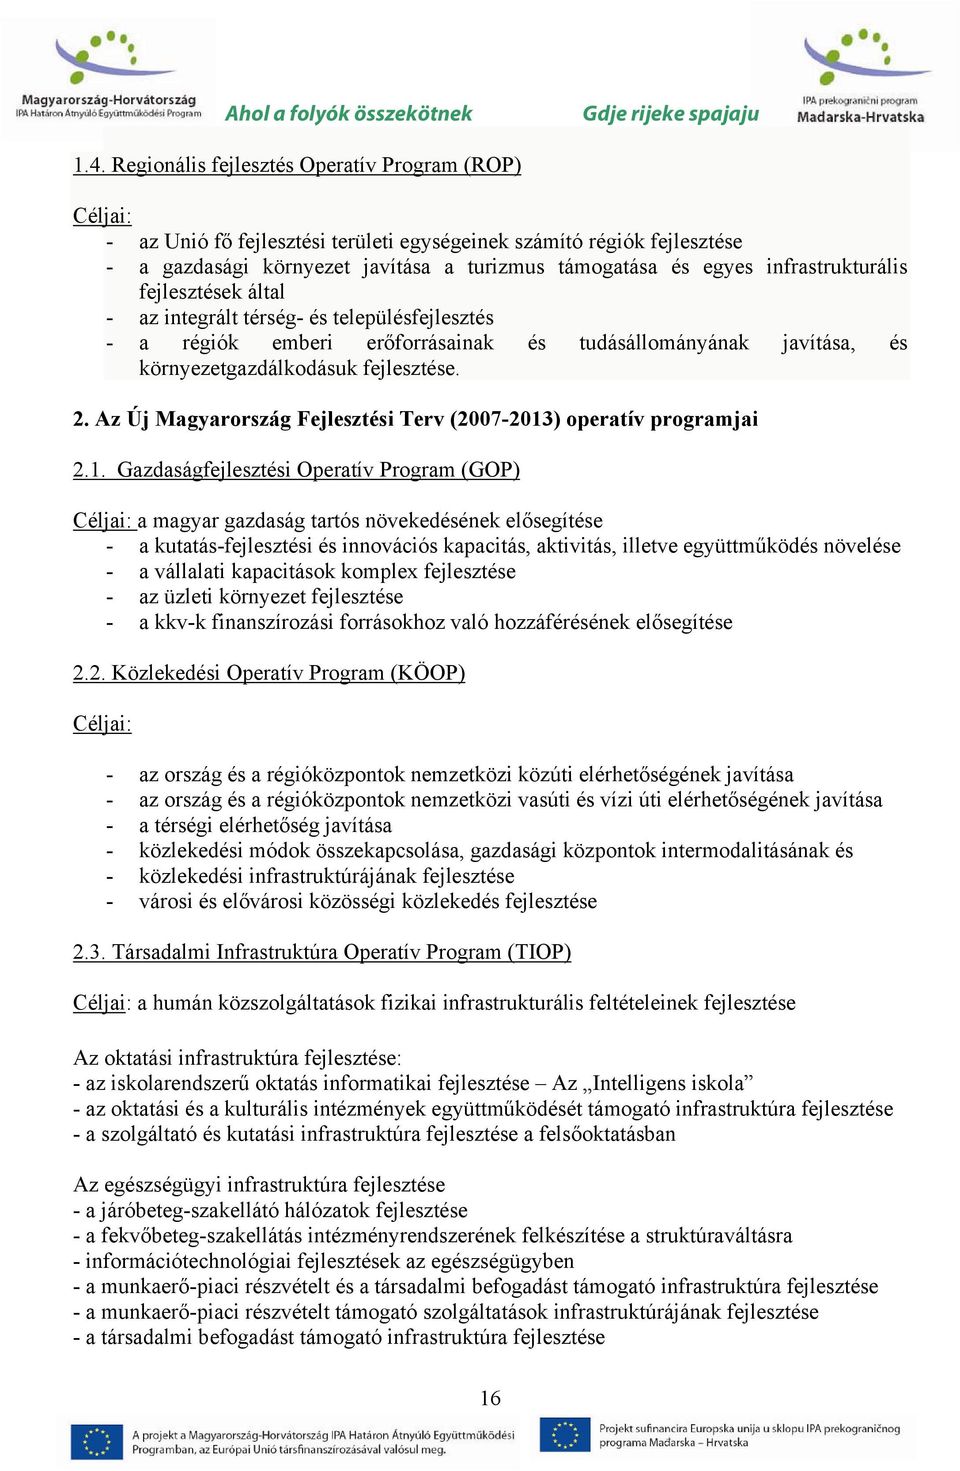 Az Új Magyarország Fejlesztési Terv (2007-2013